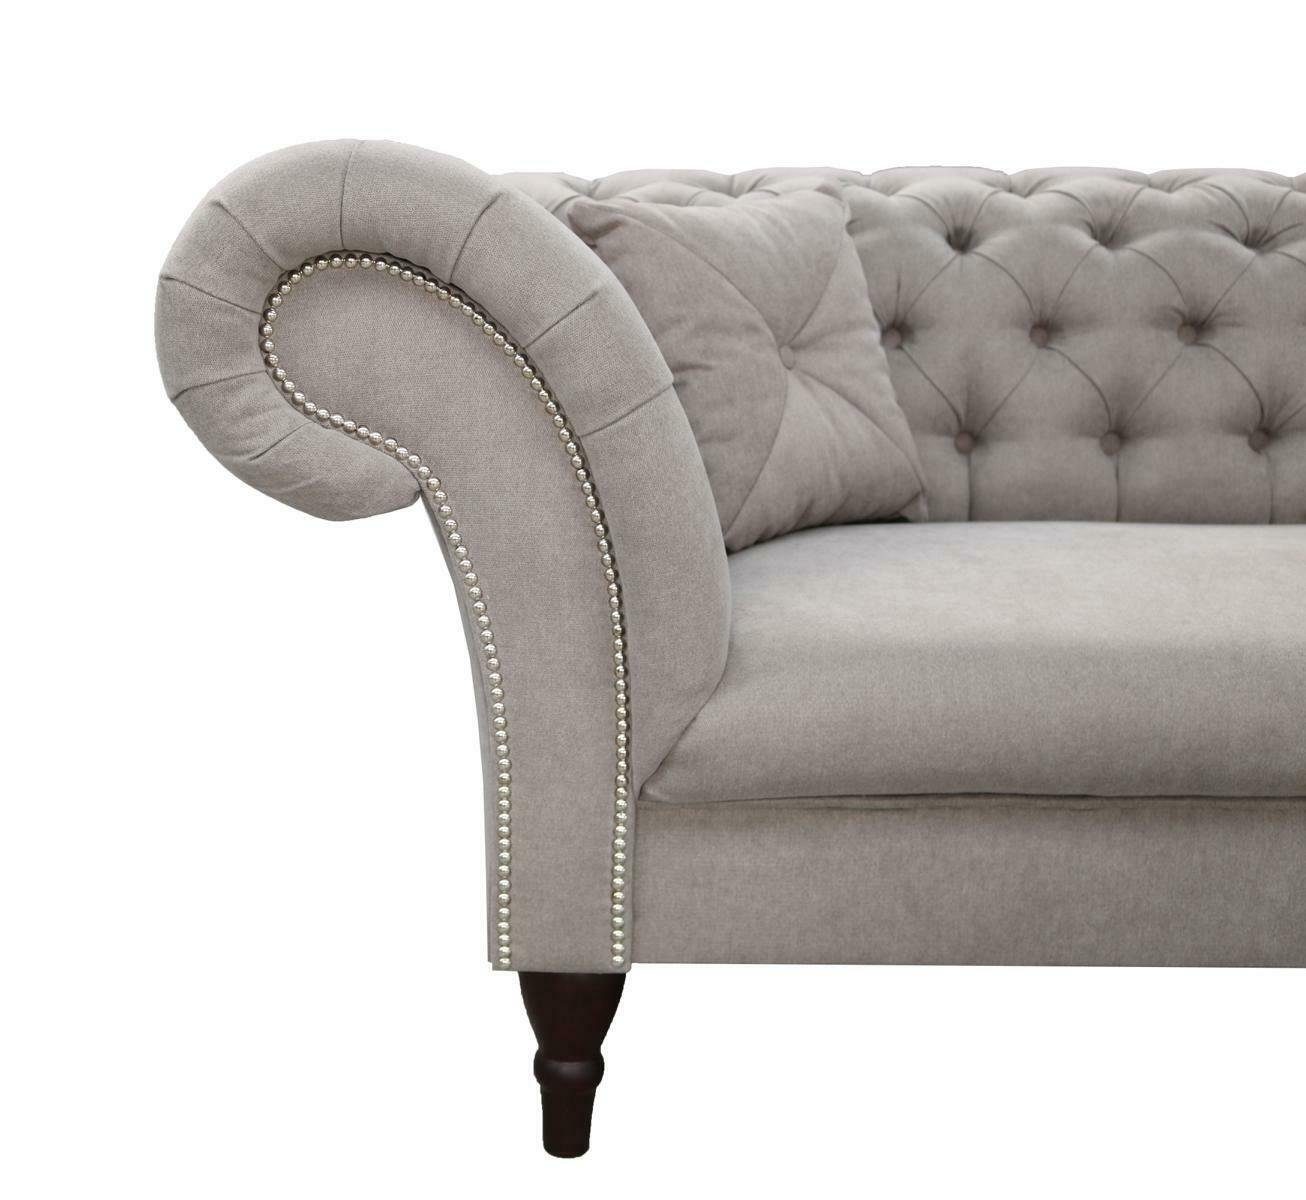 JVmoebel Made Brandneu, 3-er Design Europe Couch Chesterfield in Möbel Luxus Grauer Sofa Dreisitzer